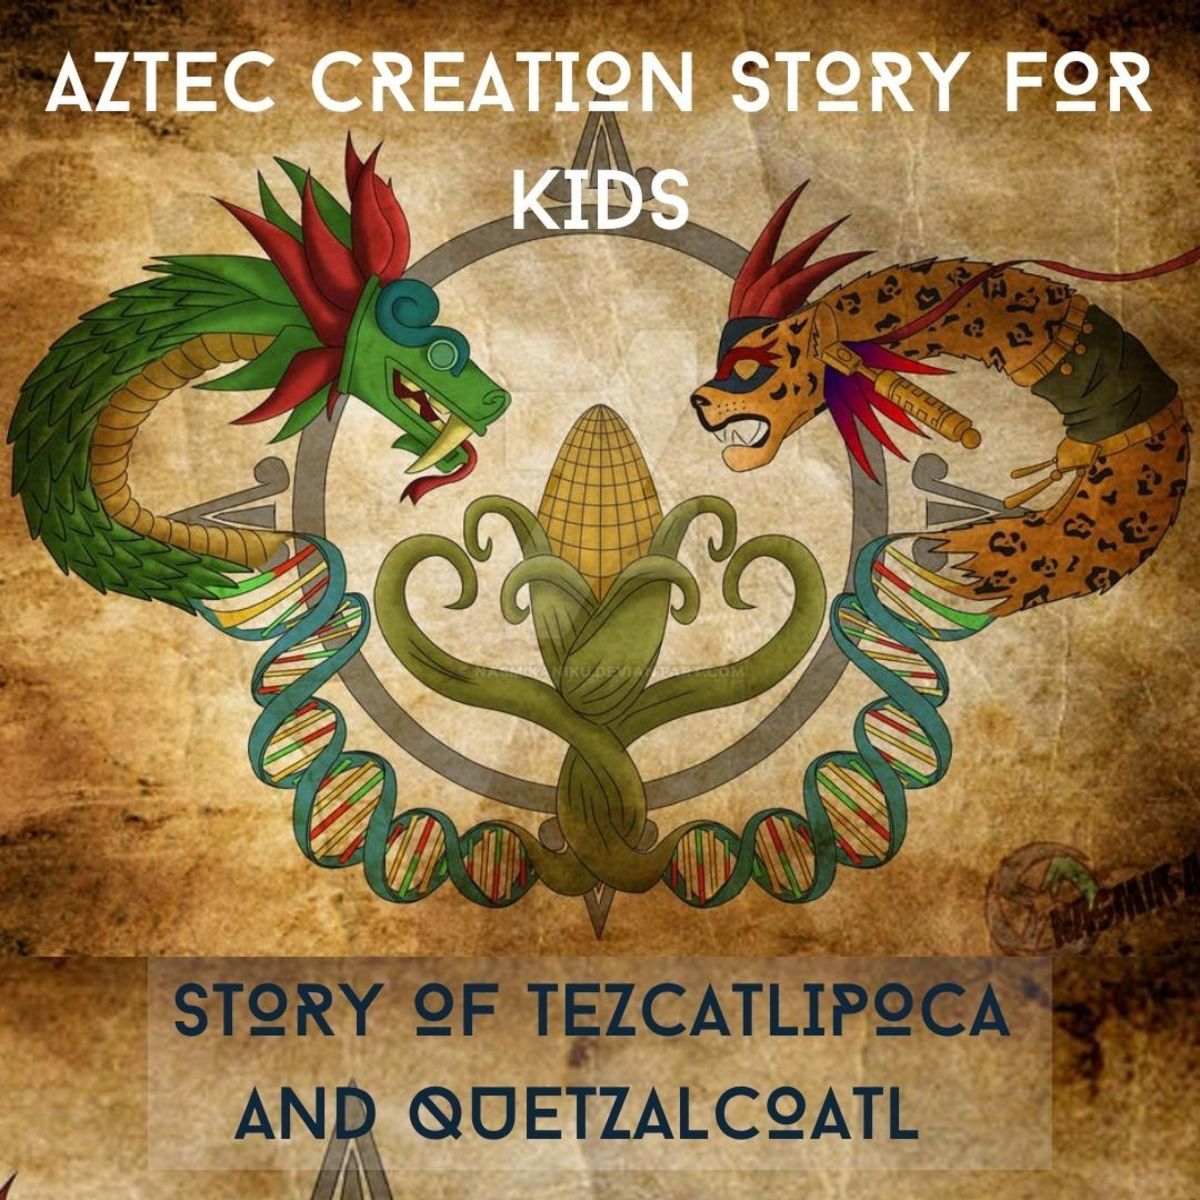 继续往下读，了解阿兹特克人的创世神话和其中的人物。为孩子们提供了一个特定的版本。这张照片包括风神蛇怪和特兹卡特利波卡，他们在阿兹特克人的创世神话中扮演着重要的角色。